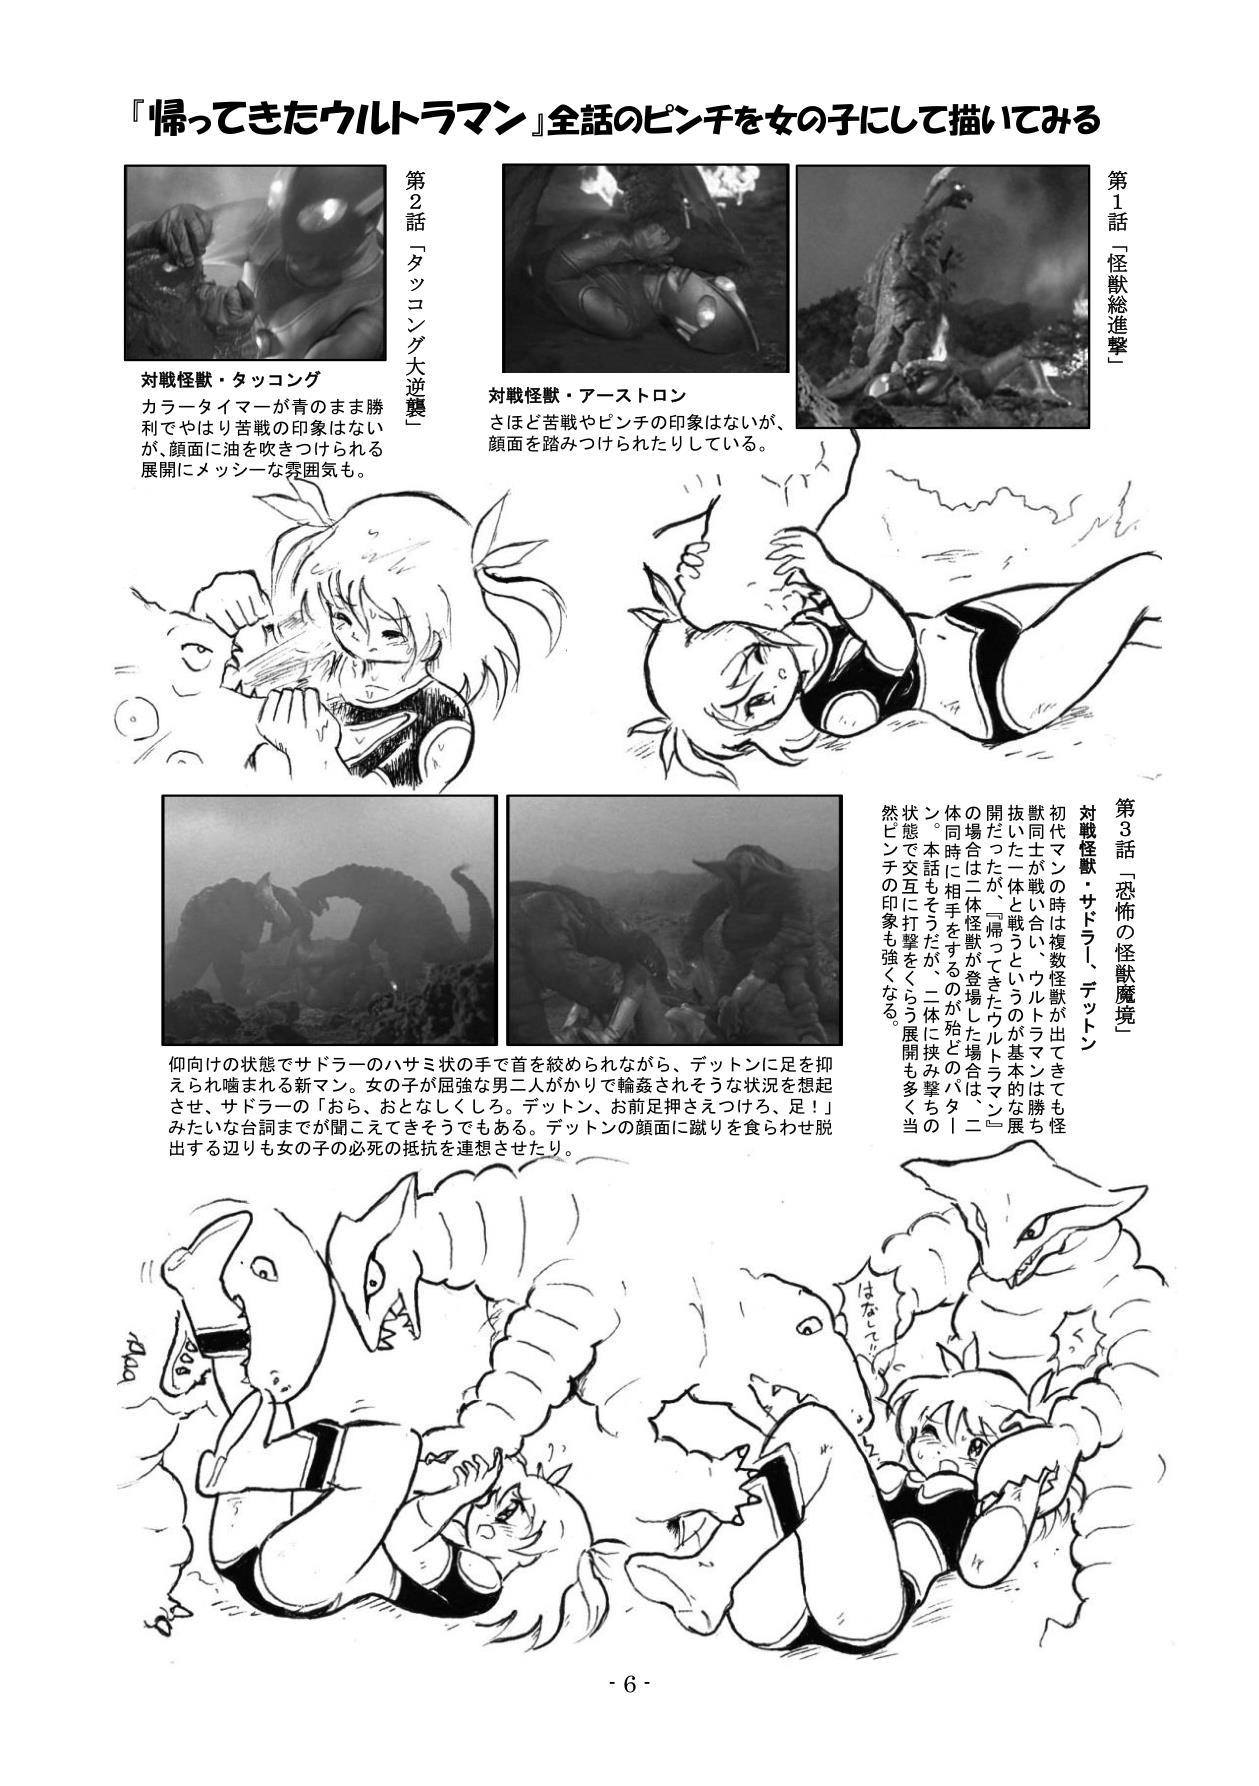 Pale Kaettekita Ultraman Musume Dai Pinch - Ultraman Scissoring - Page 5